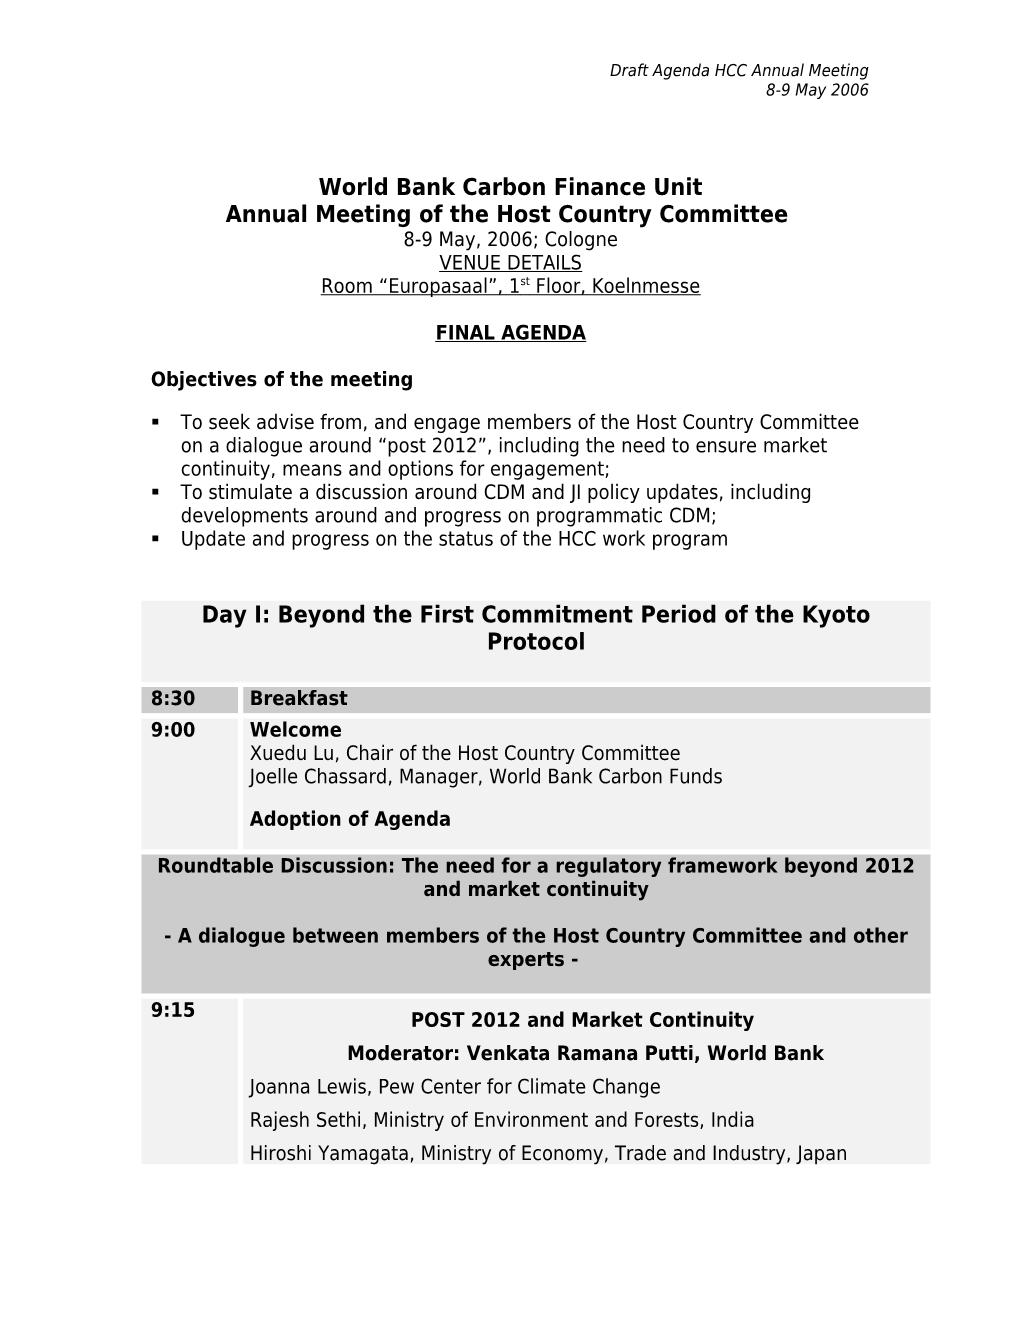 World Bank Carbon Finance Unit